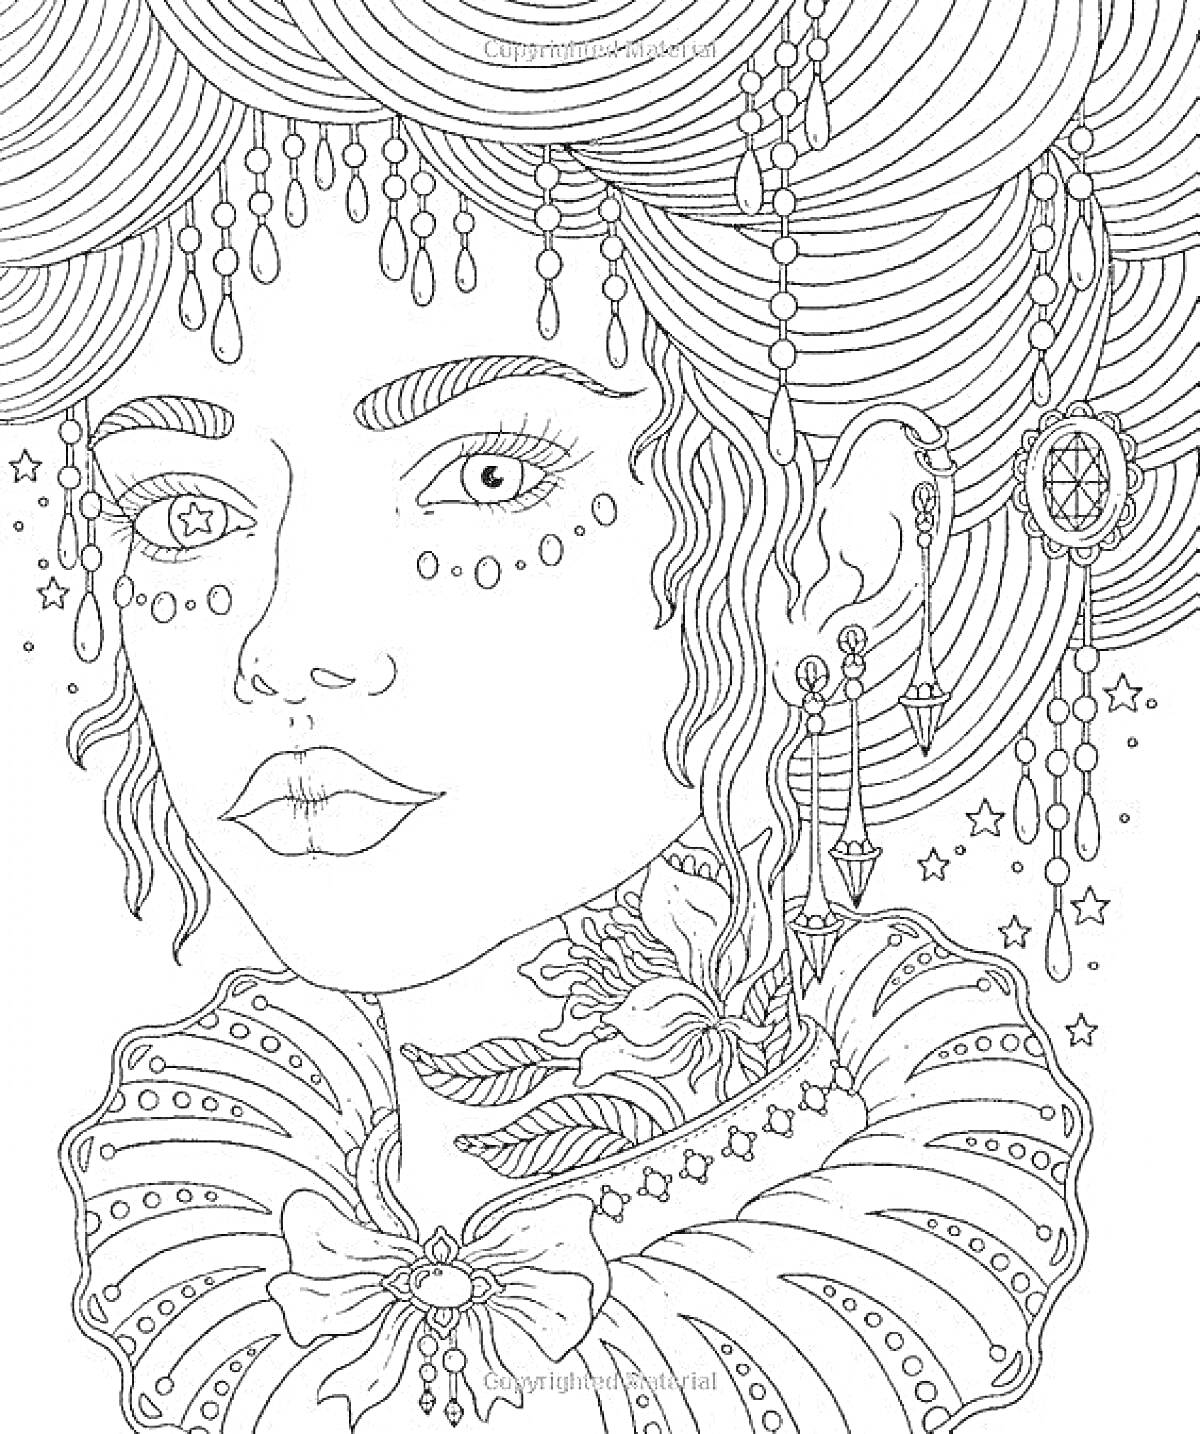 Женский портрет с сережкой, серьга в виде звезды, ожерелье, цветок на шее, украшения на волосах.